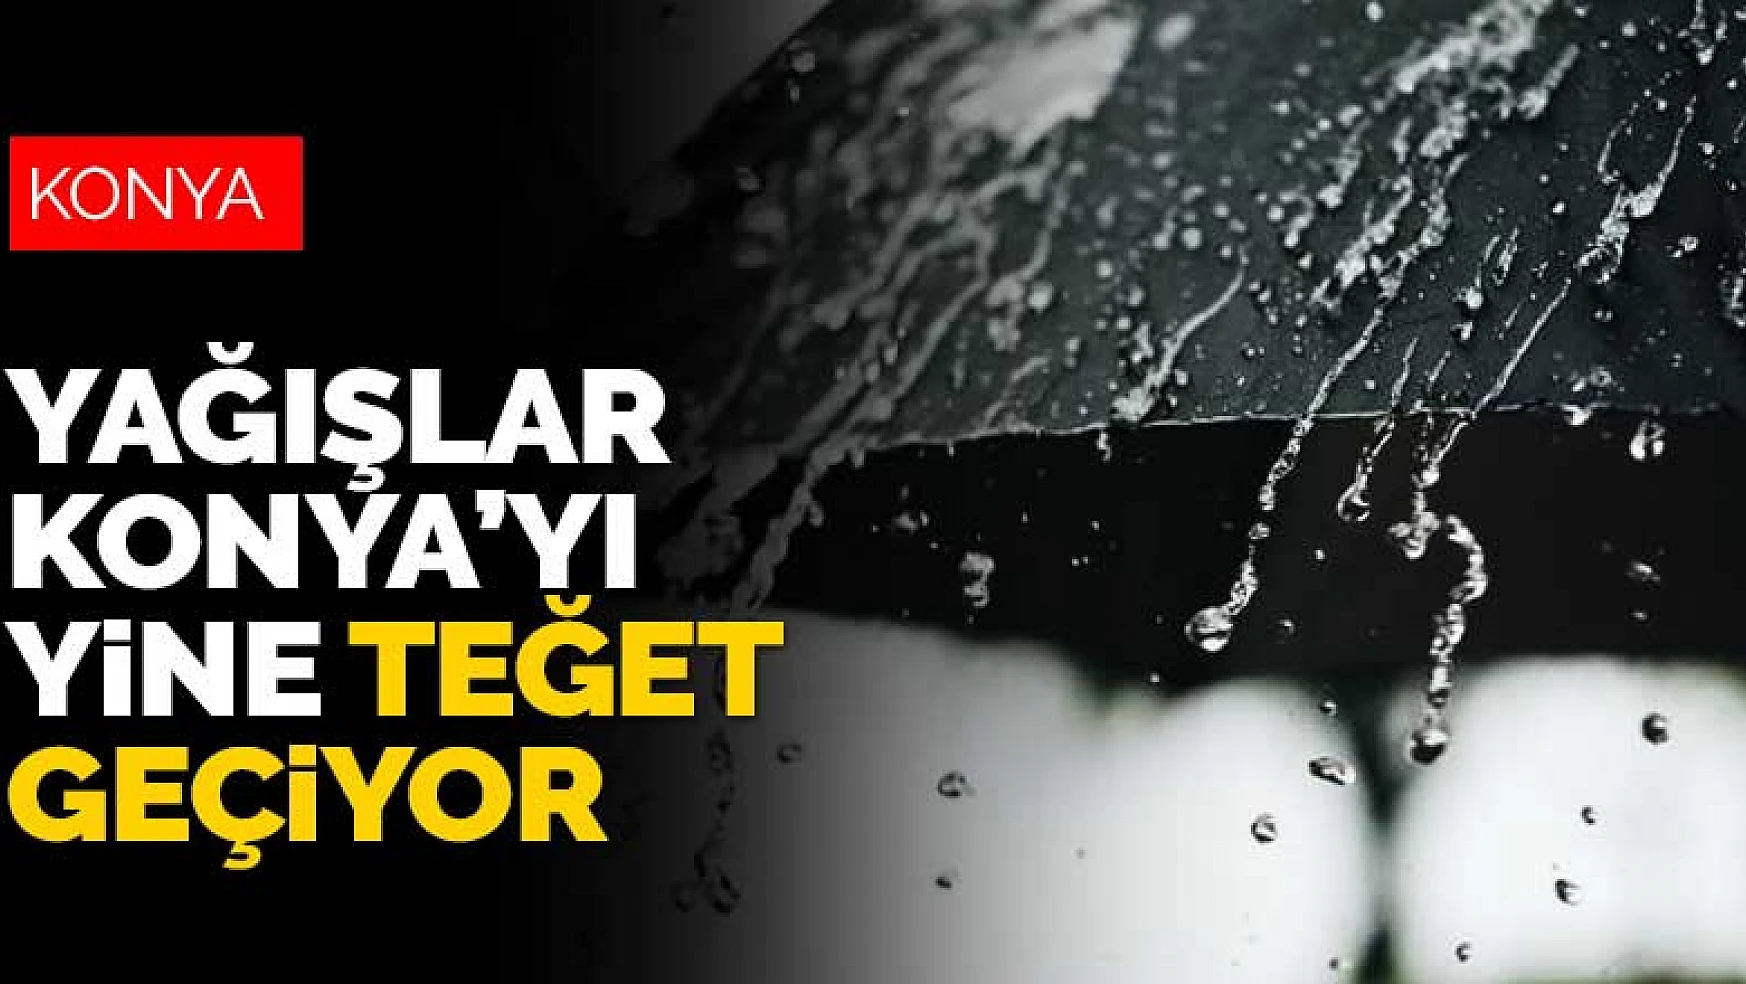 Yağışlar Konya'yı yine teğet geçiyor! İç Anadolu'nun kuzeyine uyarı